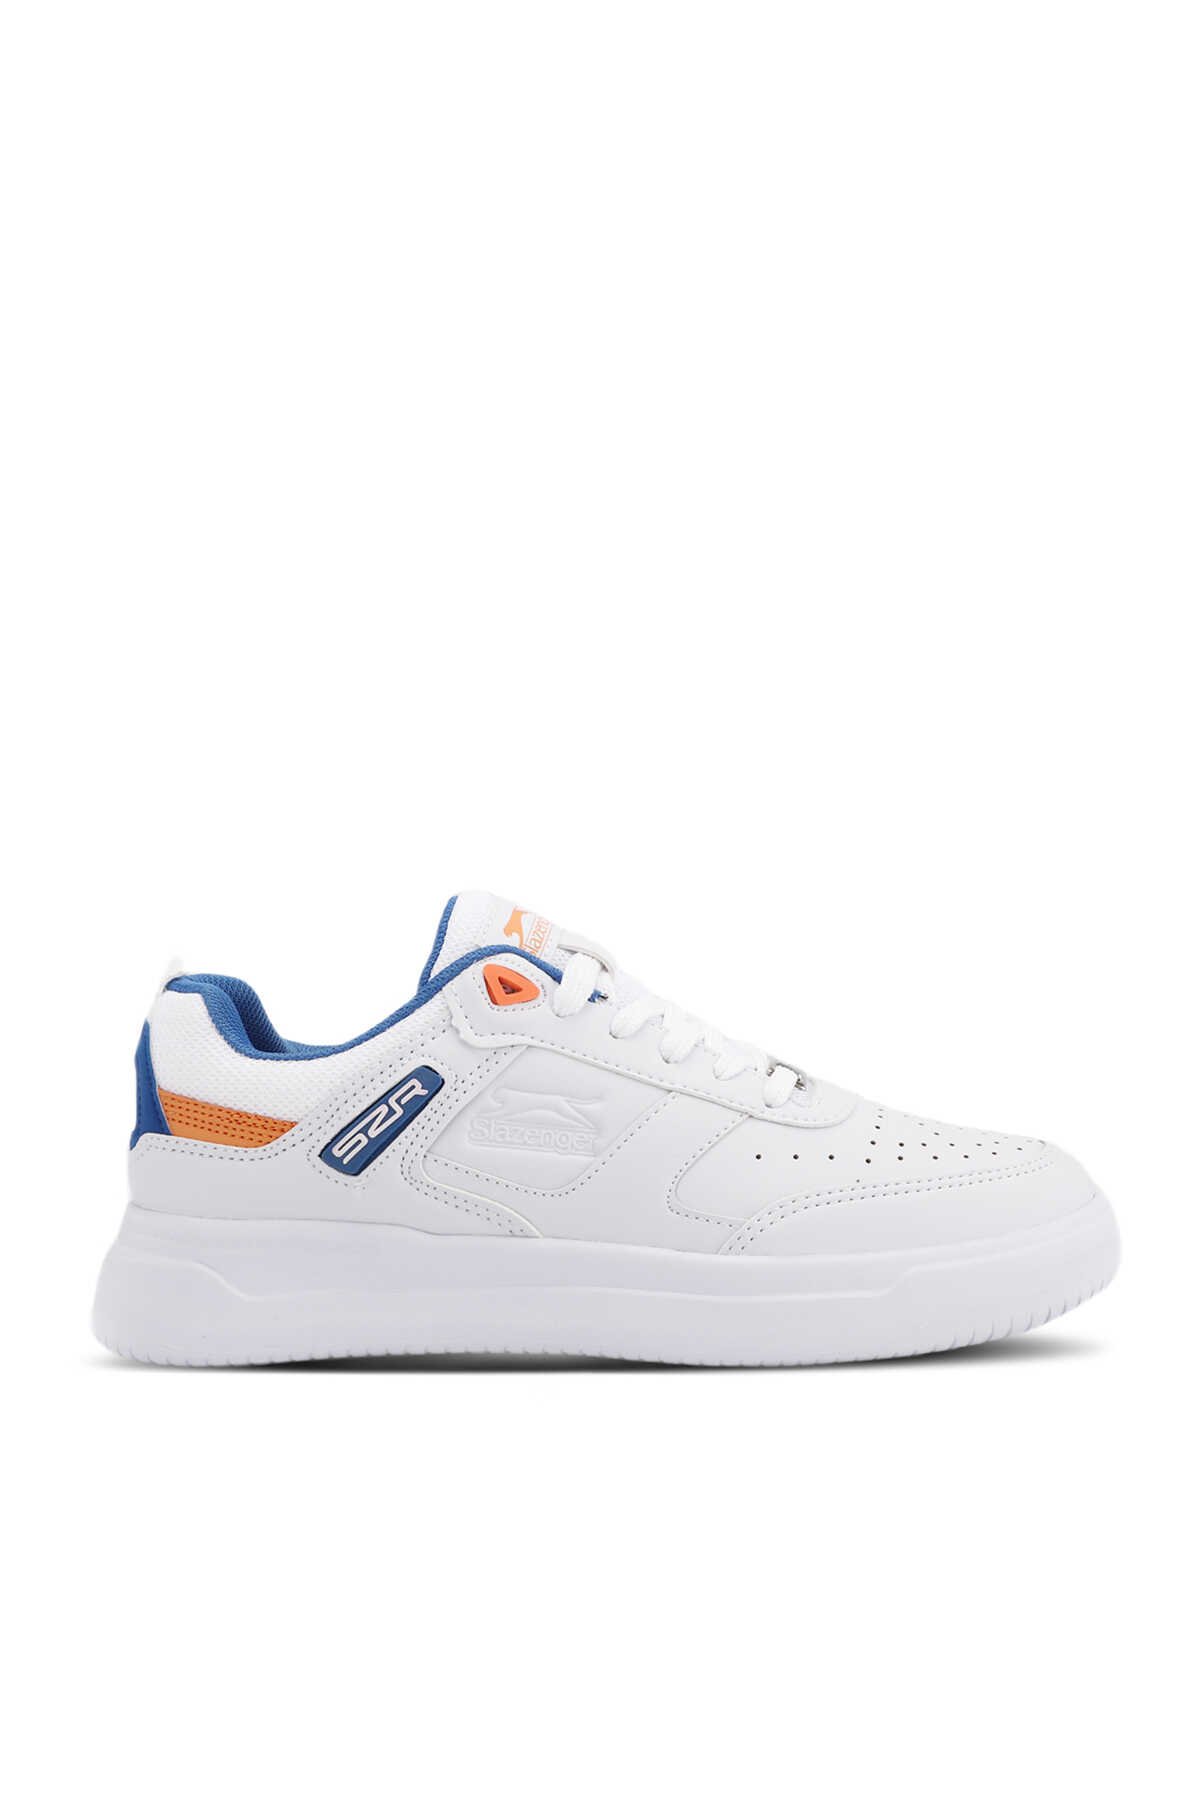 Slazenger - PROJECT I Sneaker Kadın Ayakkabı Beyaz / Saks Mavi